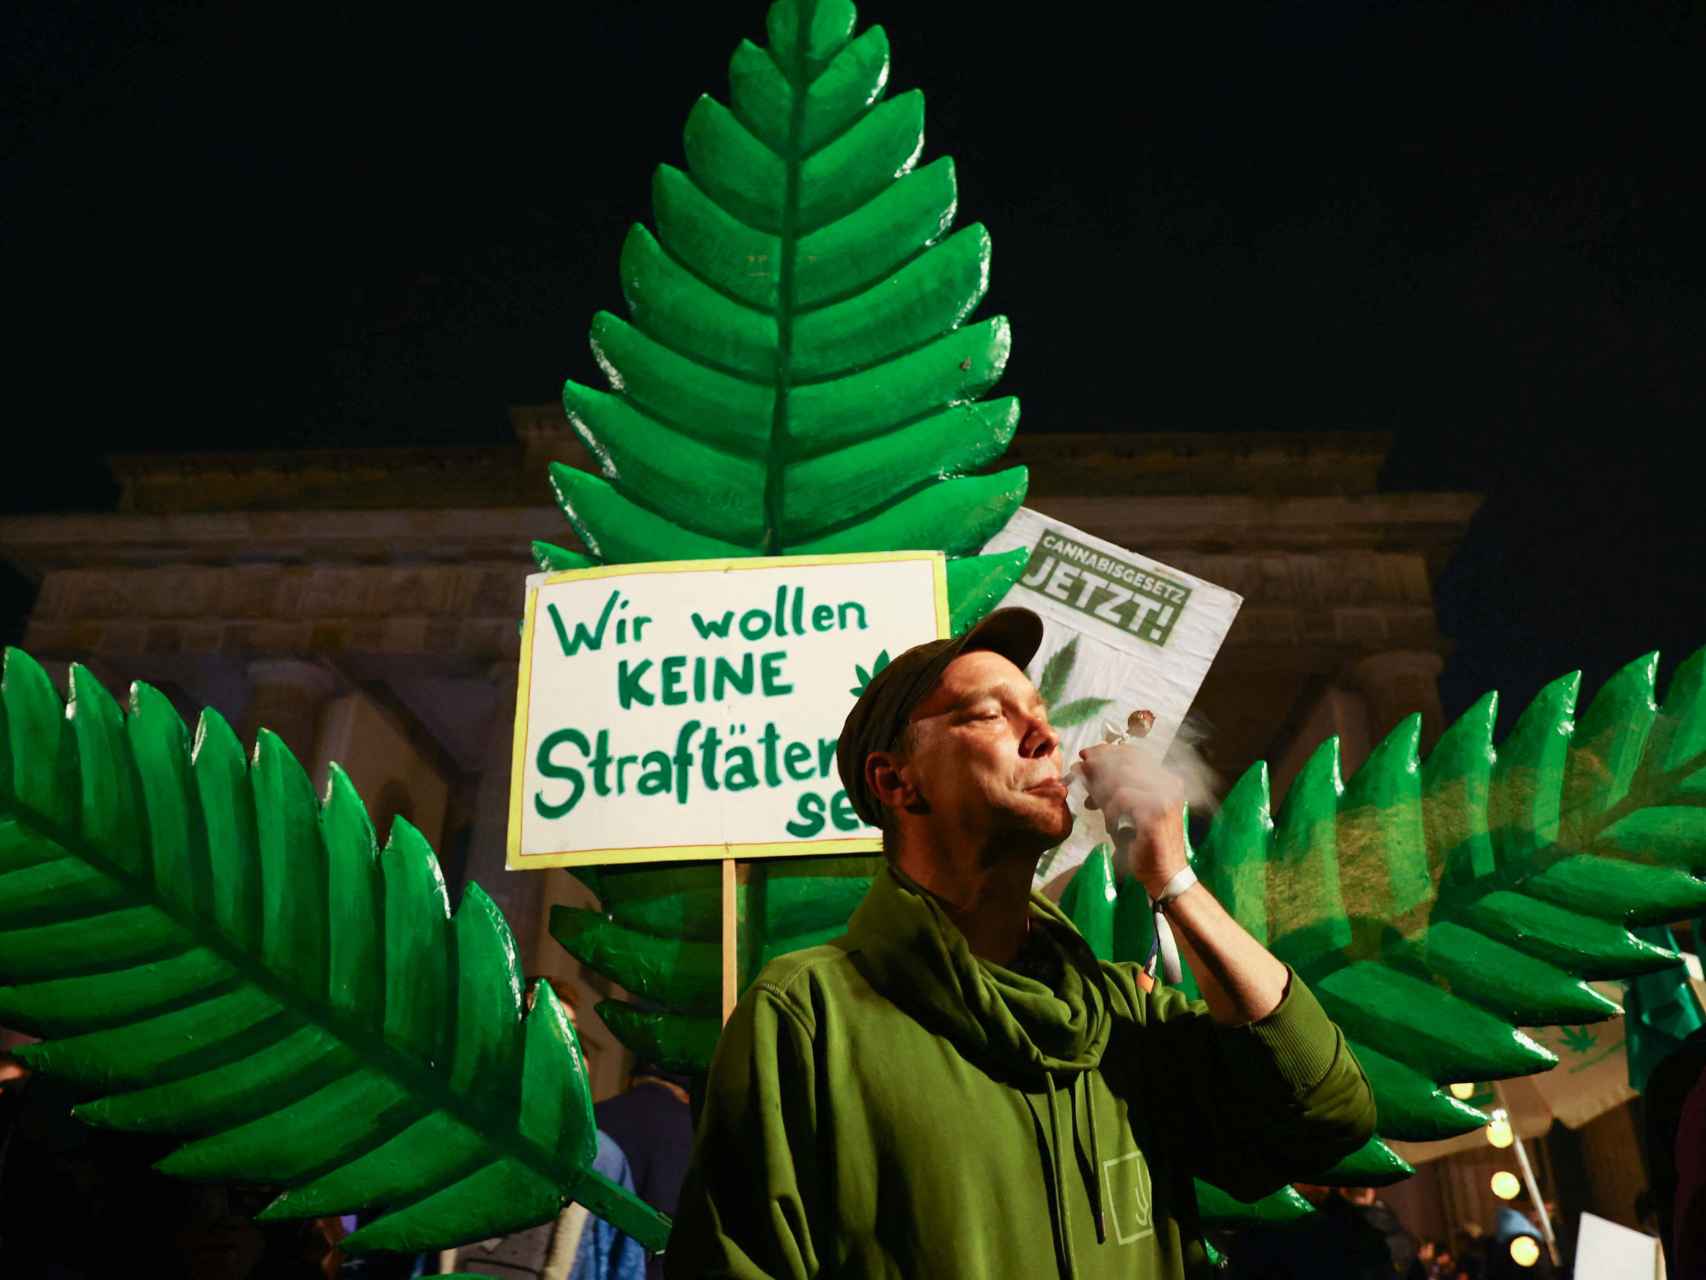 Berlineses celebran la entrada en vigor de la ley que despenaliza el consumo recreativo de marihuana.